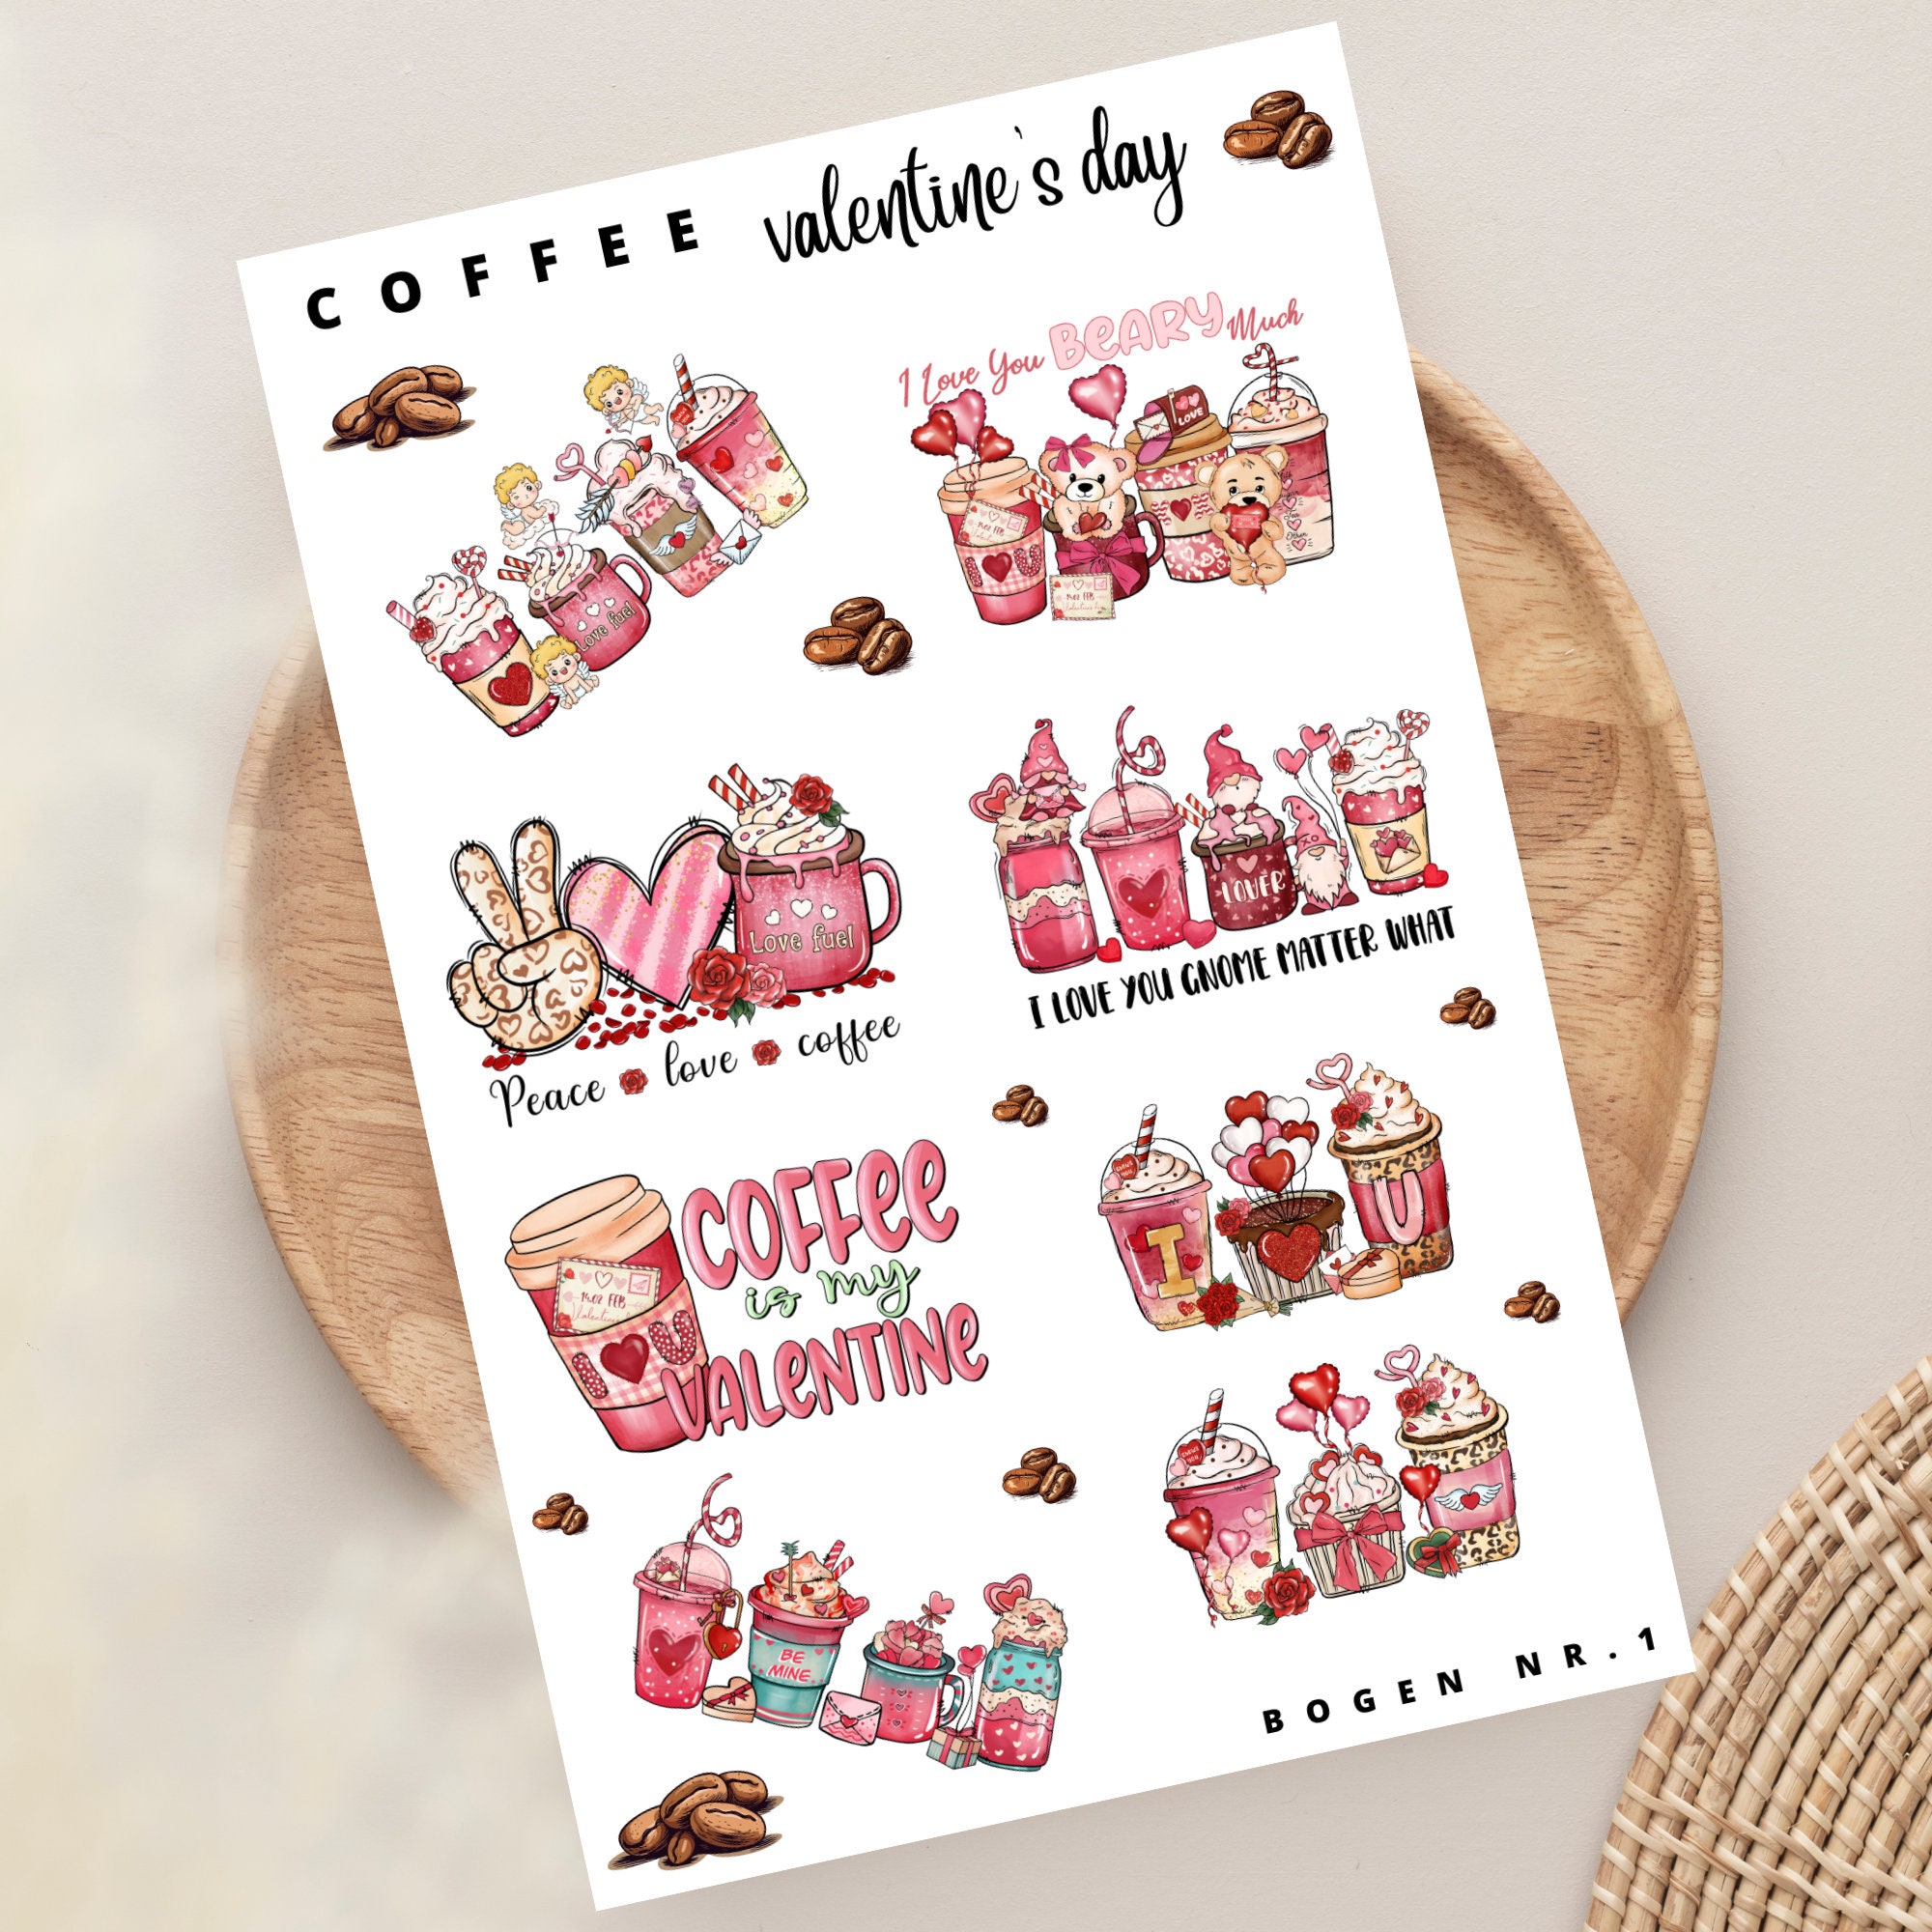 Sticker Bogen - Kaffee Valentinstag | Sticker Set - Journal Sticker - Aufkleber Stickerbogen 